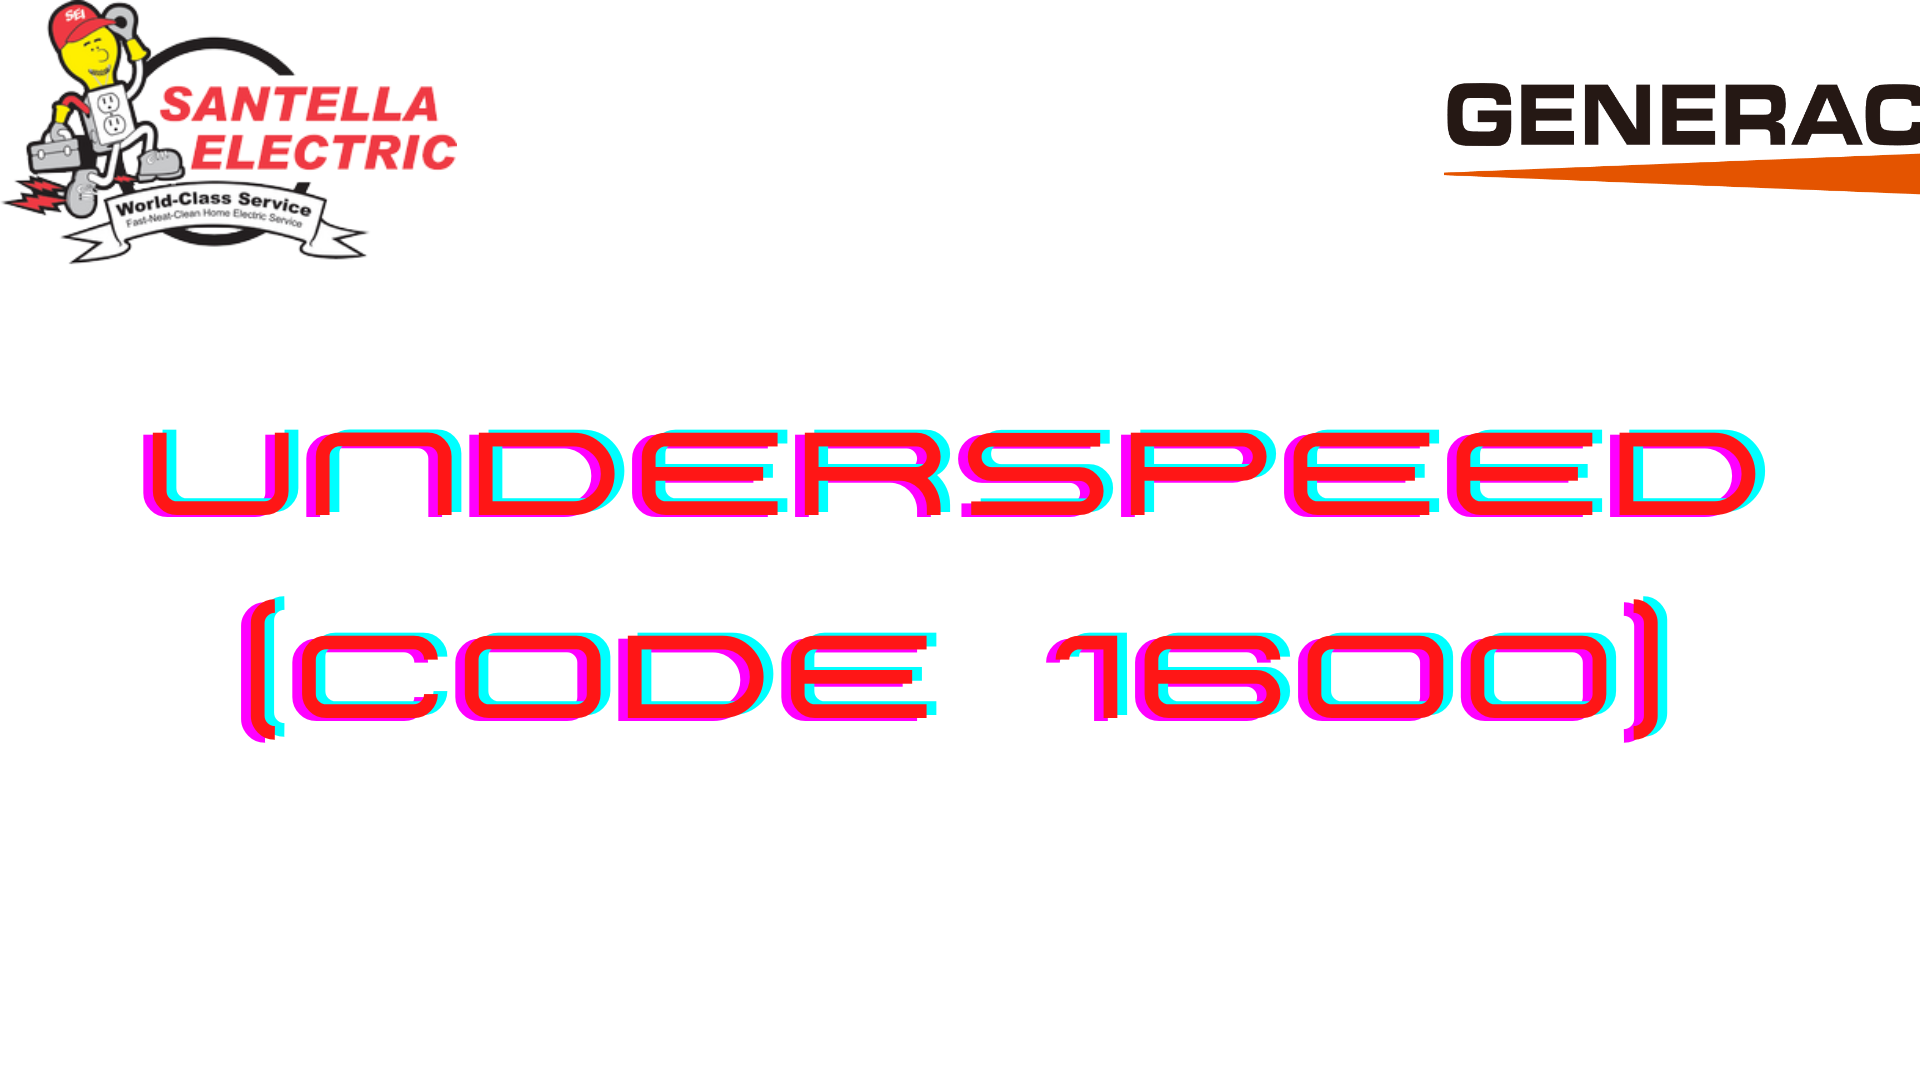 Generac Error Code - Underspeed (Code 1600)